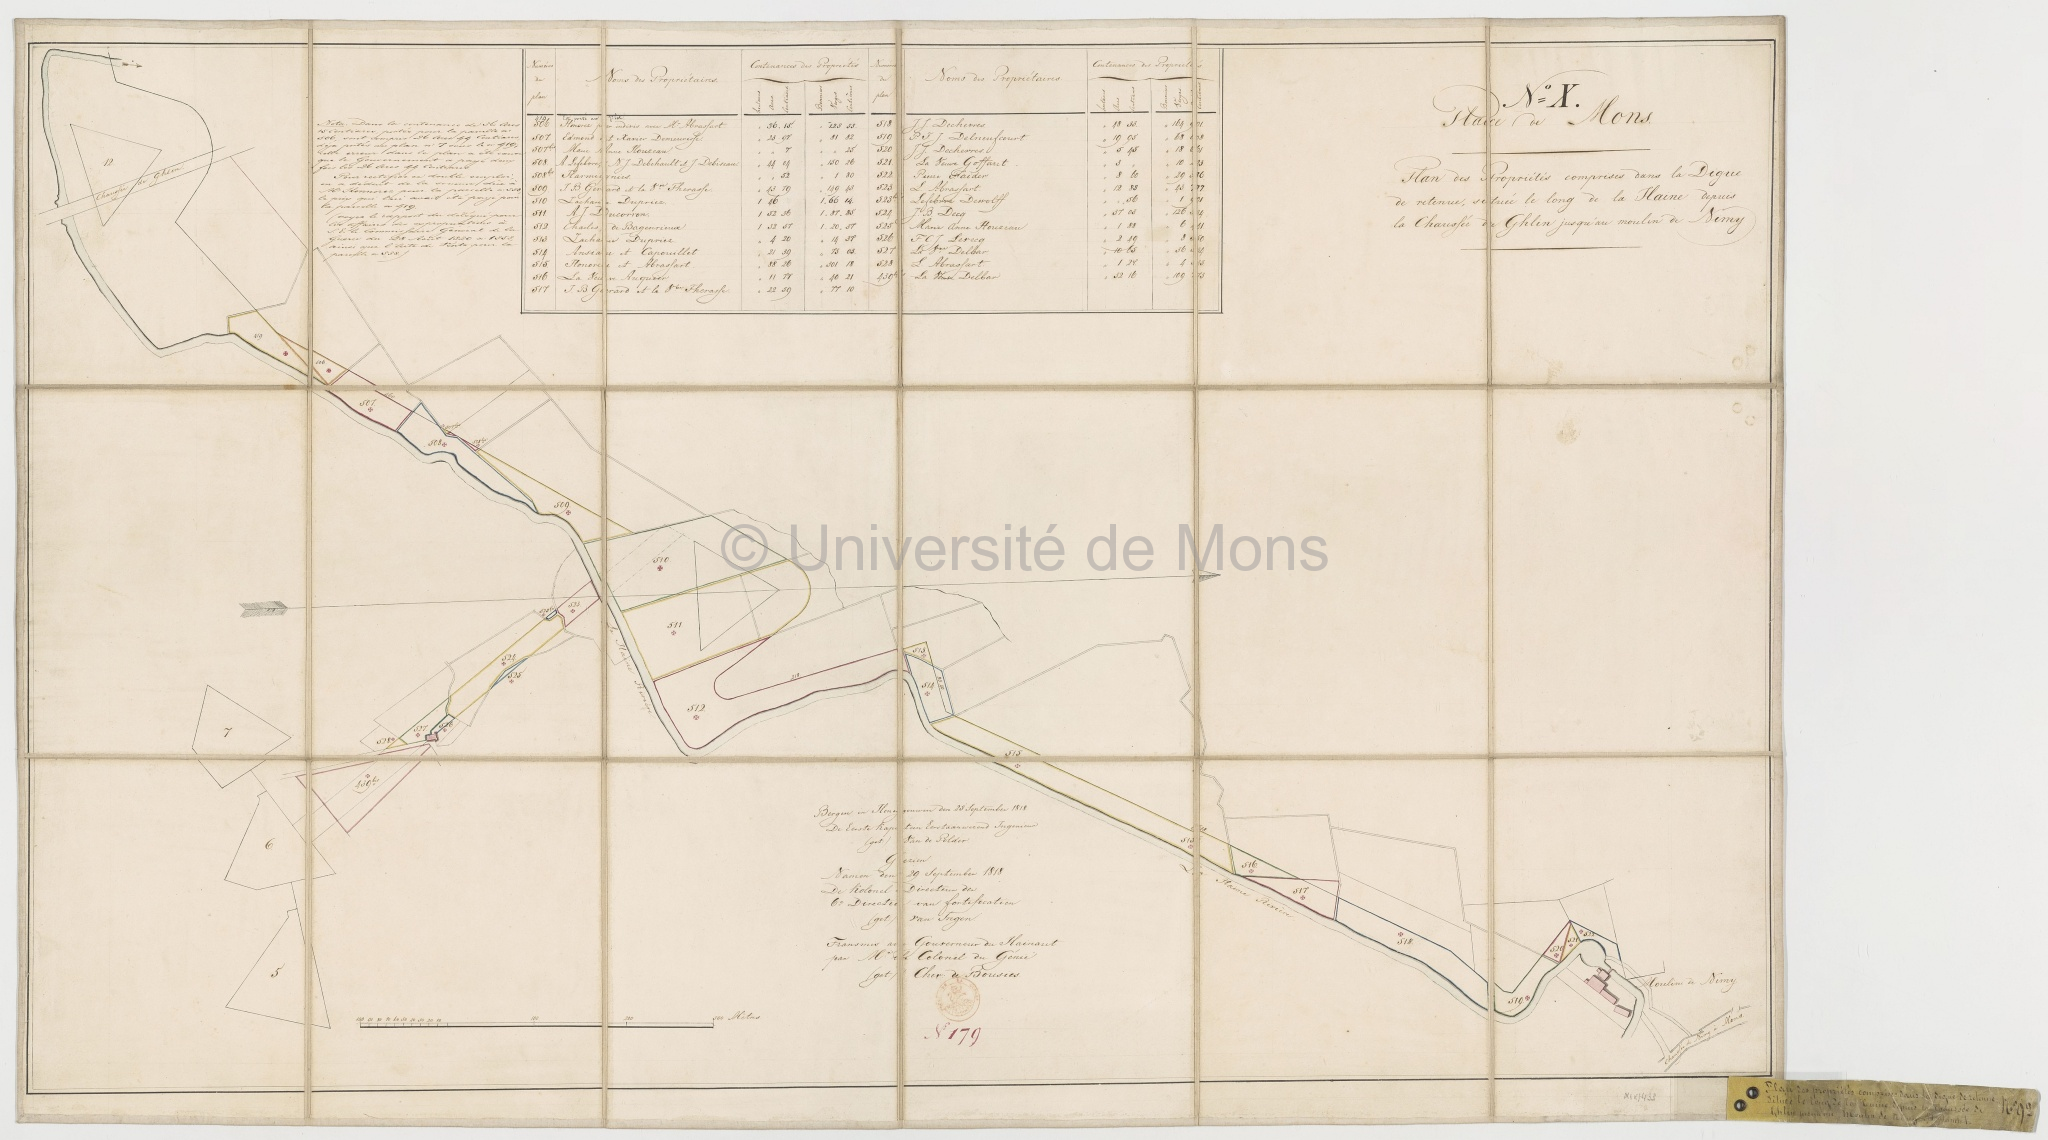 Plan des propriétés comprises dans la Digue de retenue située le long de la Haine depuis la Chaussée de Ghlin jusqu'au moulin de Nimy